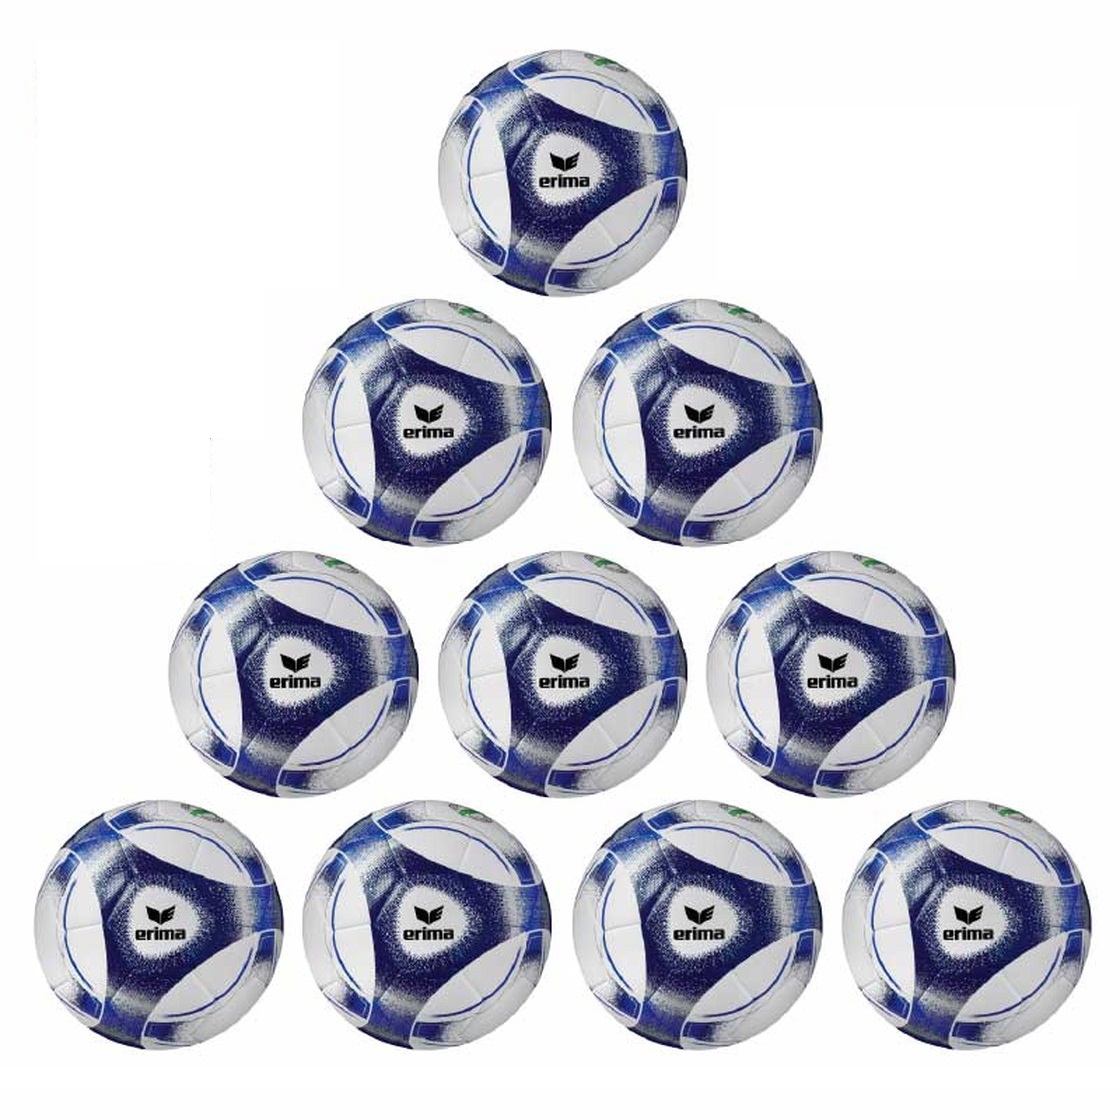 Erima Ballpaket 10x Hybrid Trainingsball 2.0 inkl. Ballsack